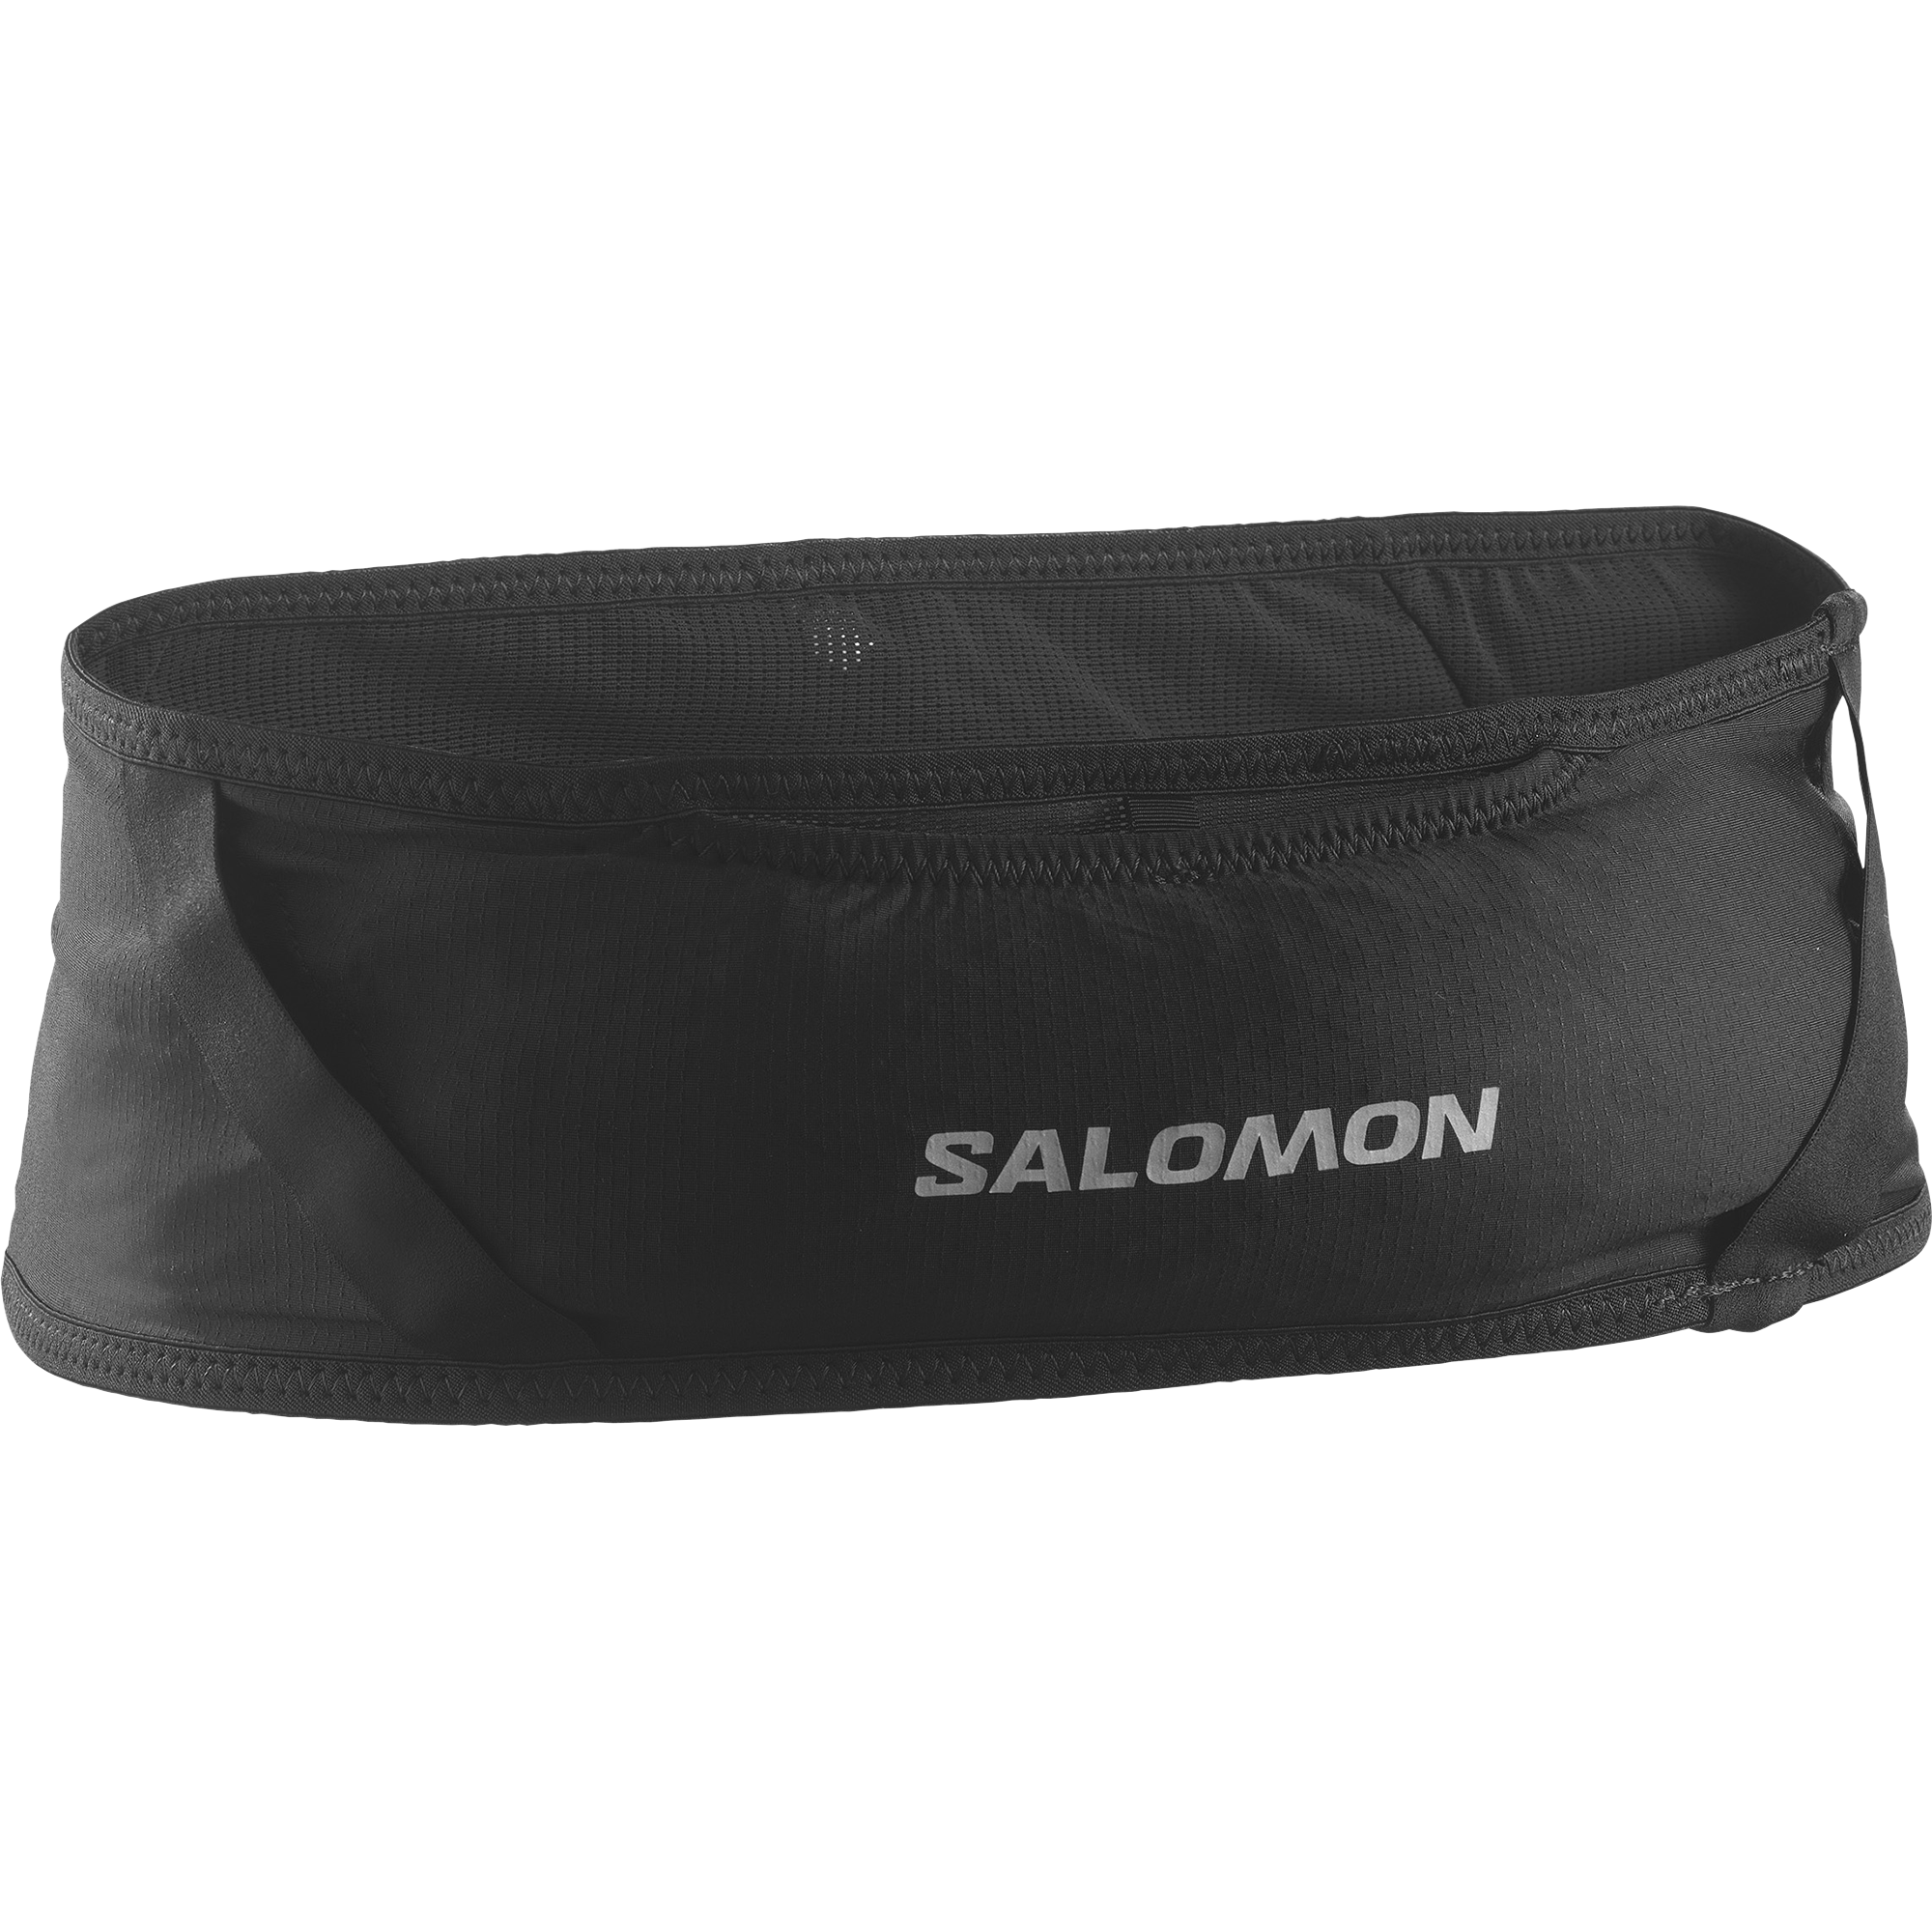 Salomon Laufgürtel "PULSE", mit Reißverschlusstaschen